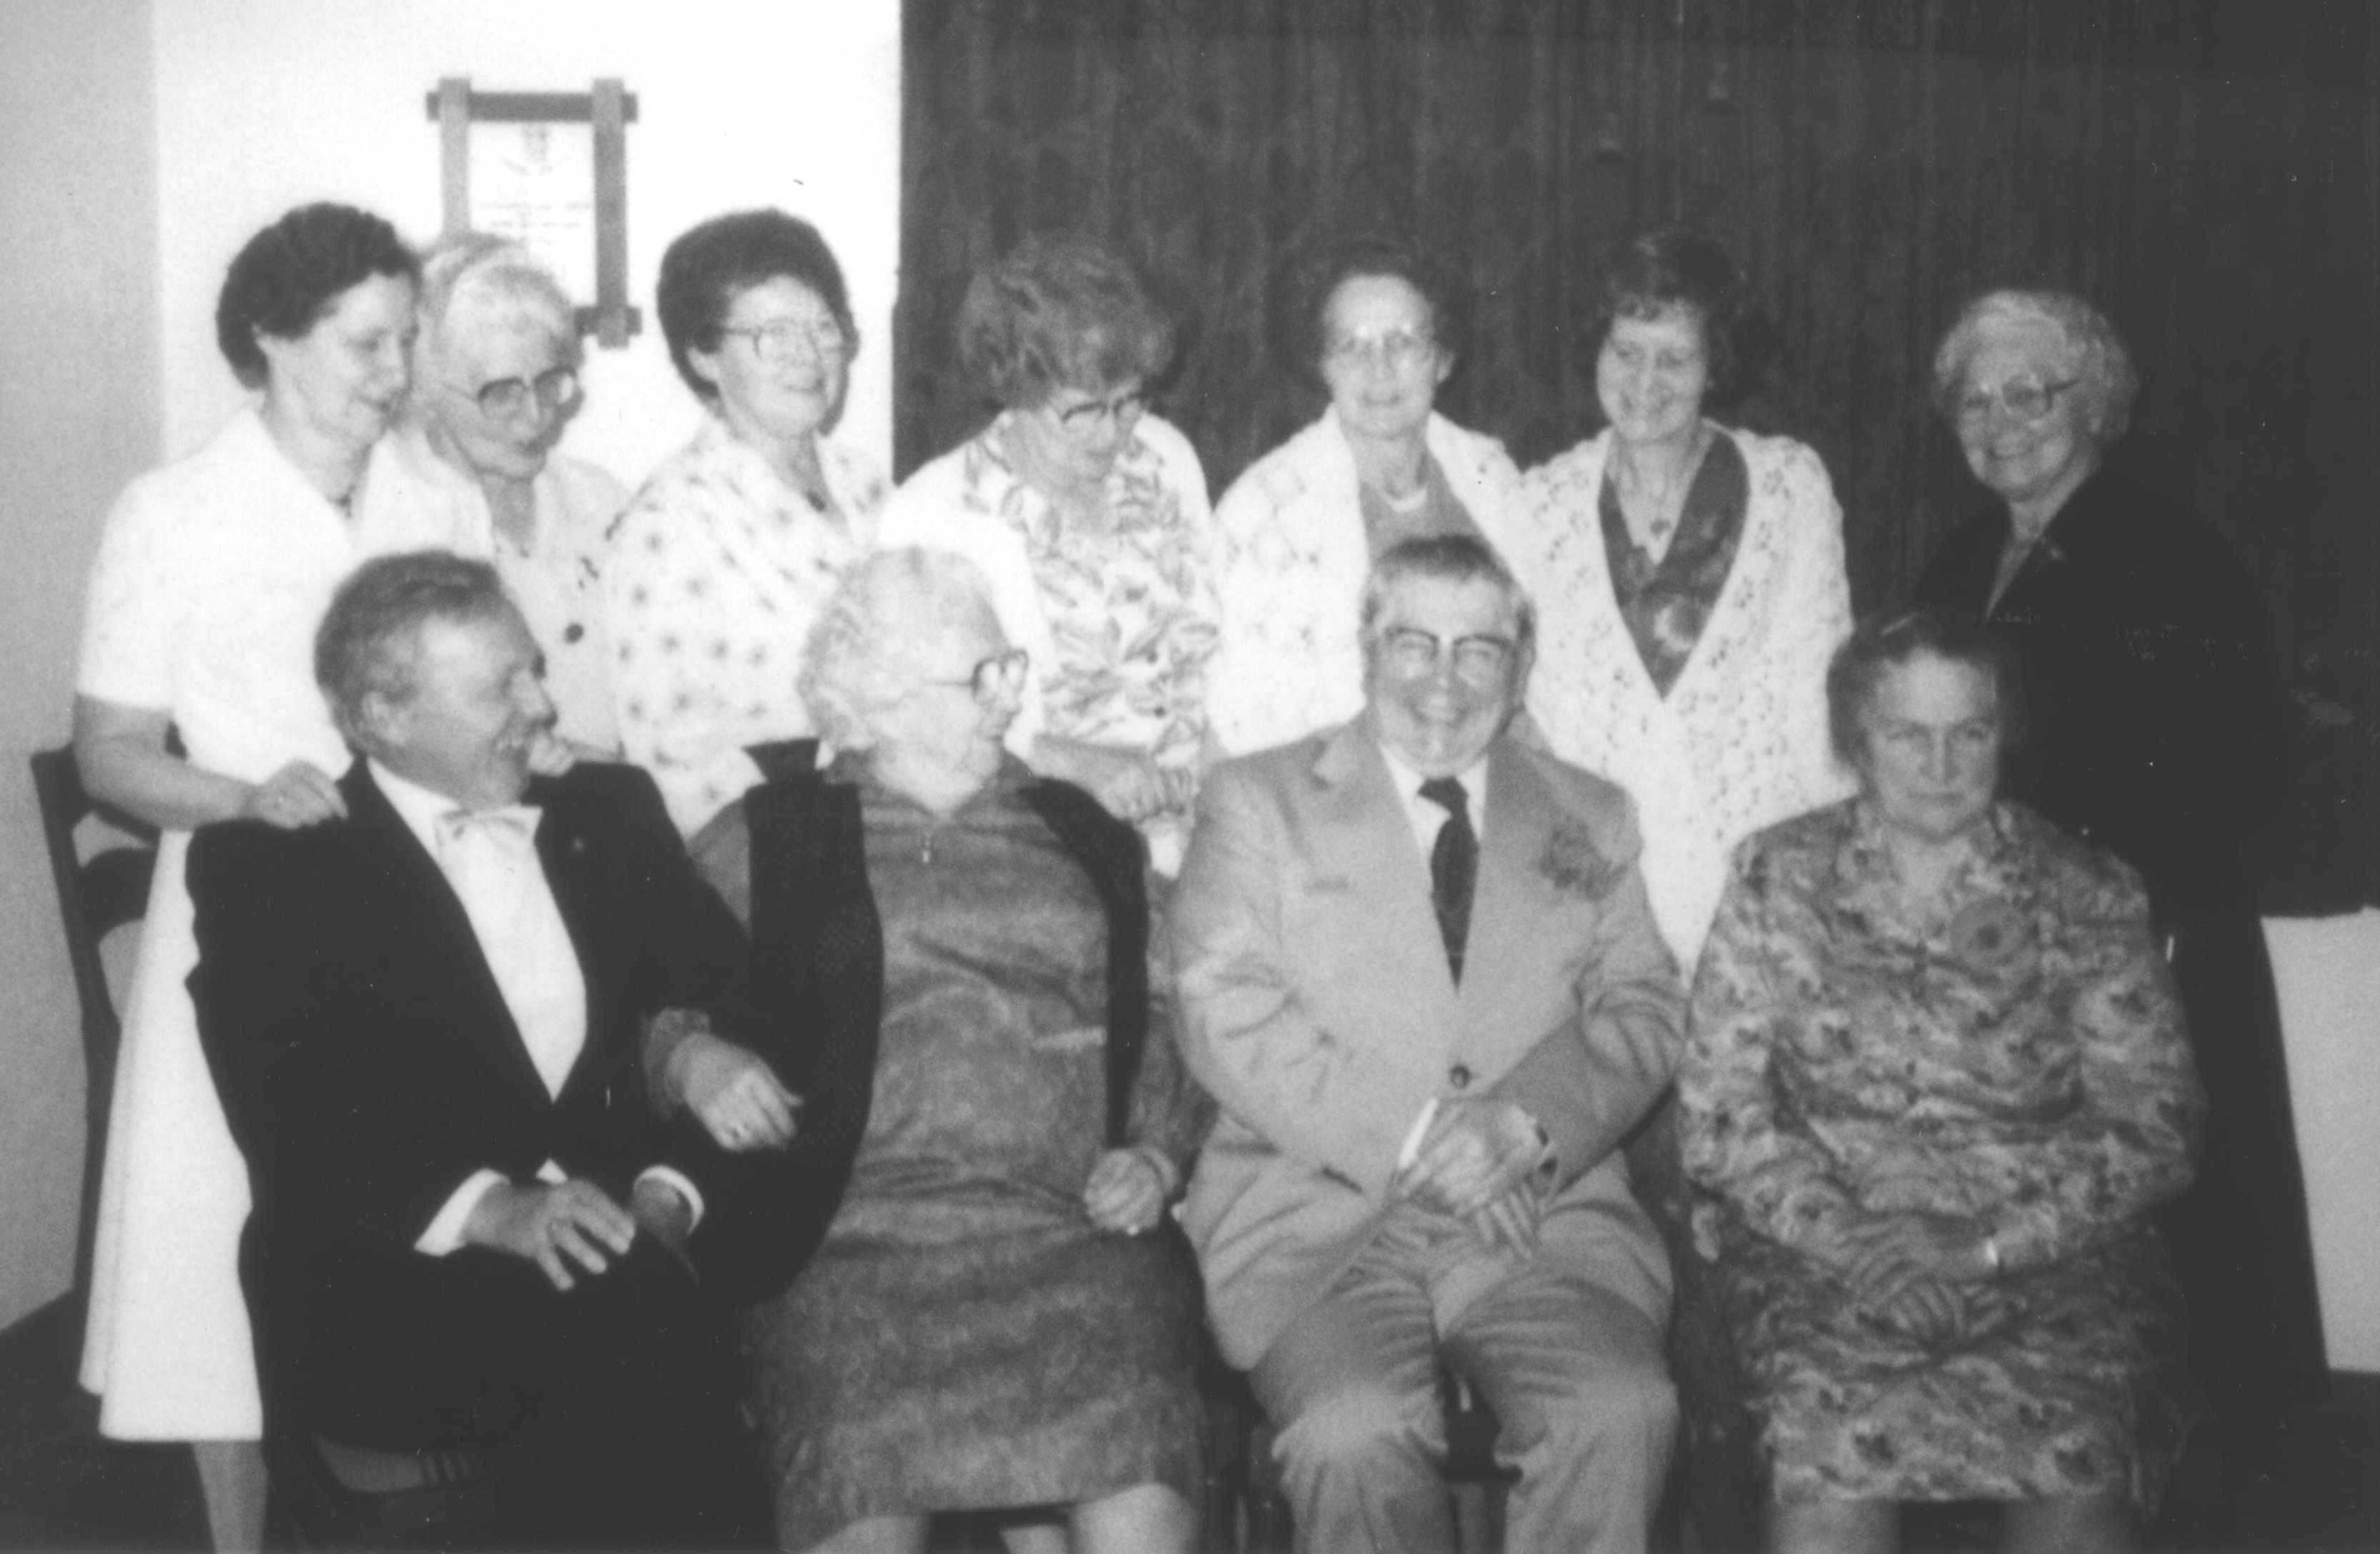 Bulten wedding 1980